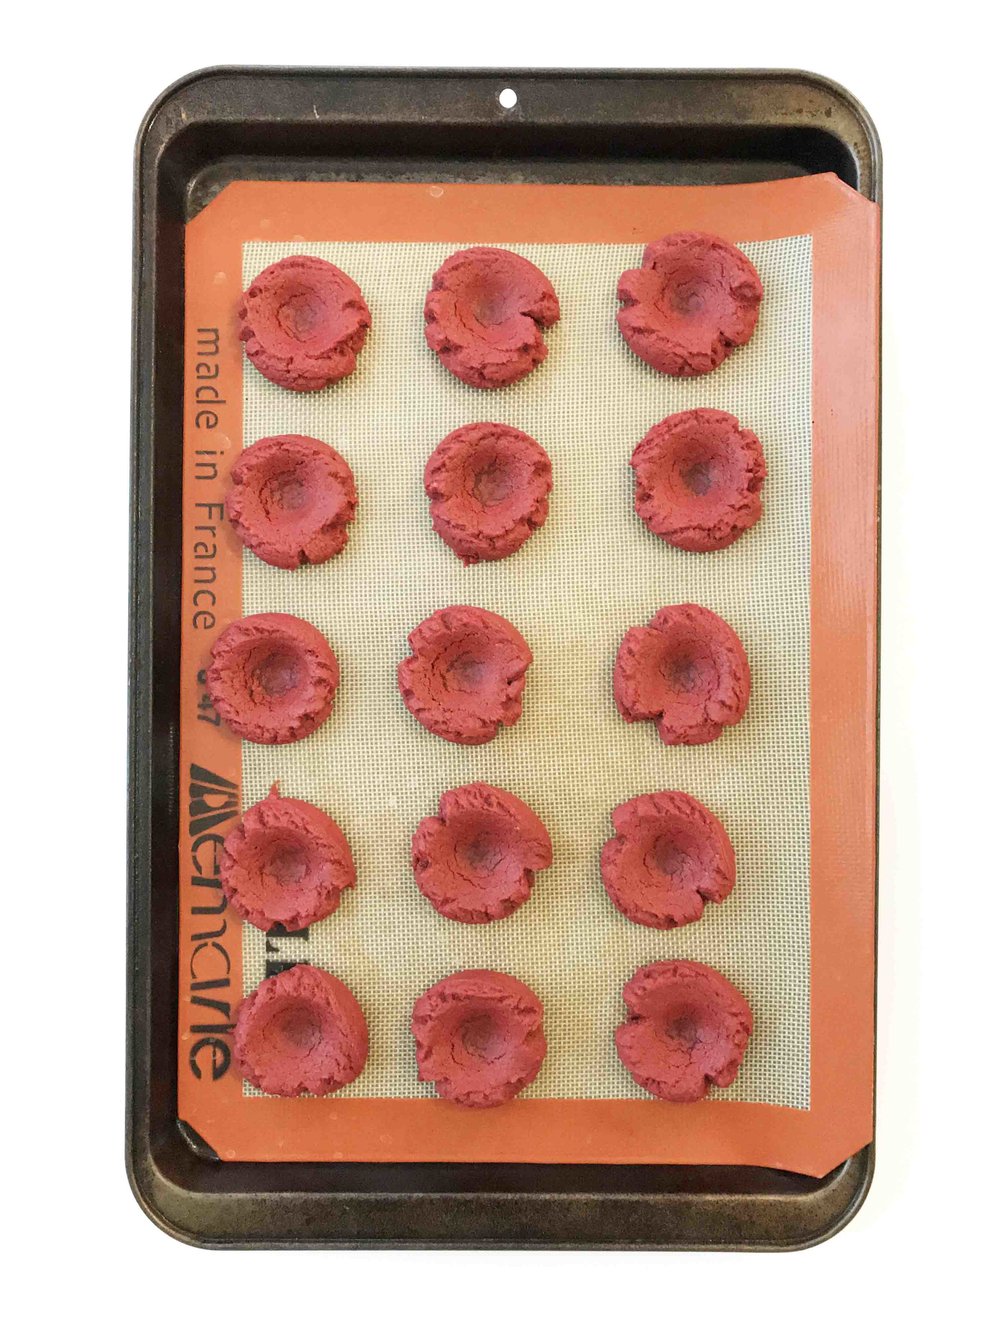 red-velvet-thumbprint-cookies8.jpg